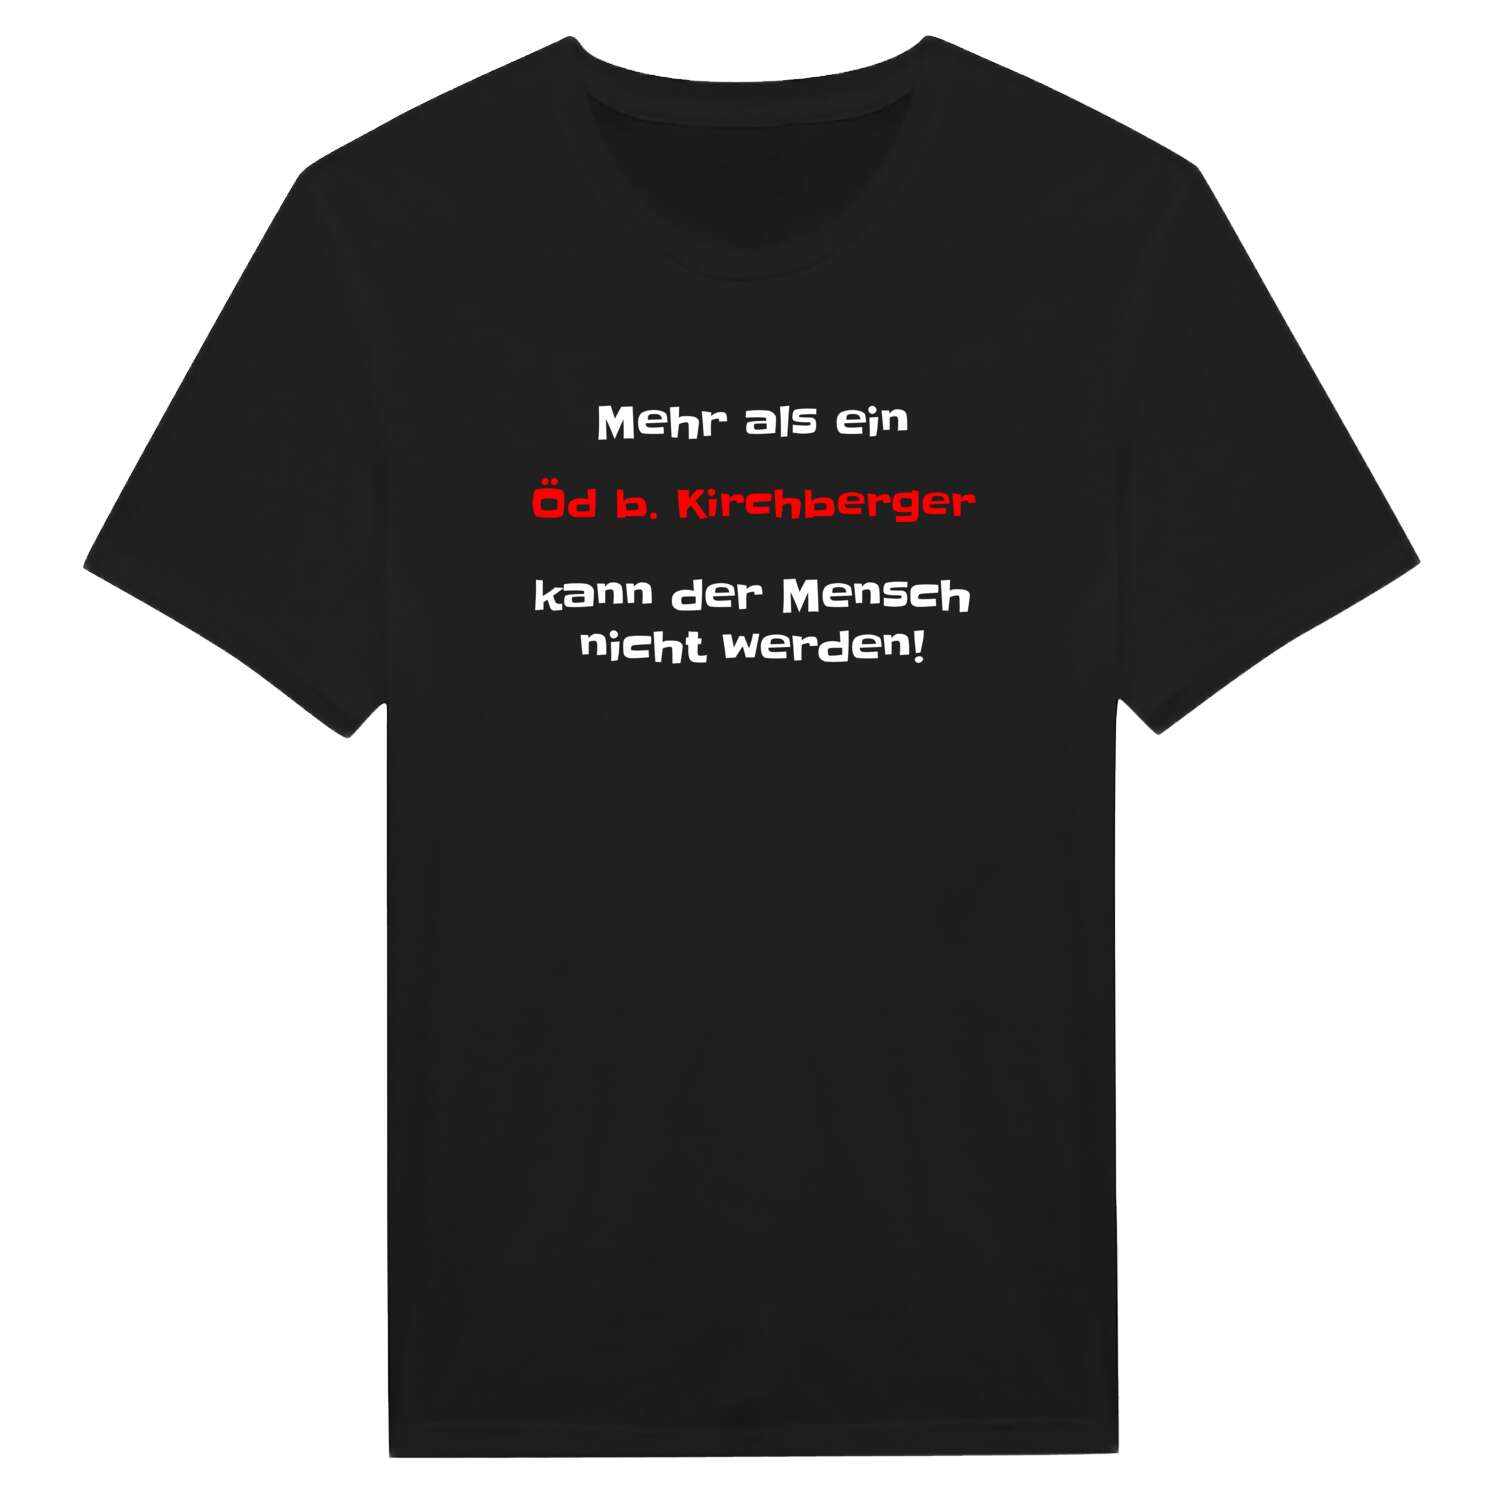 Öd b. Kirchberg T-Shirt »Mehr als ein«